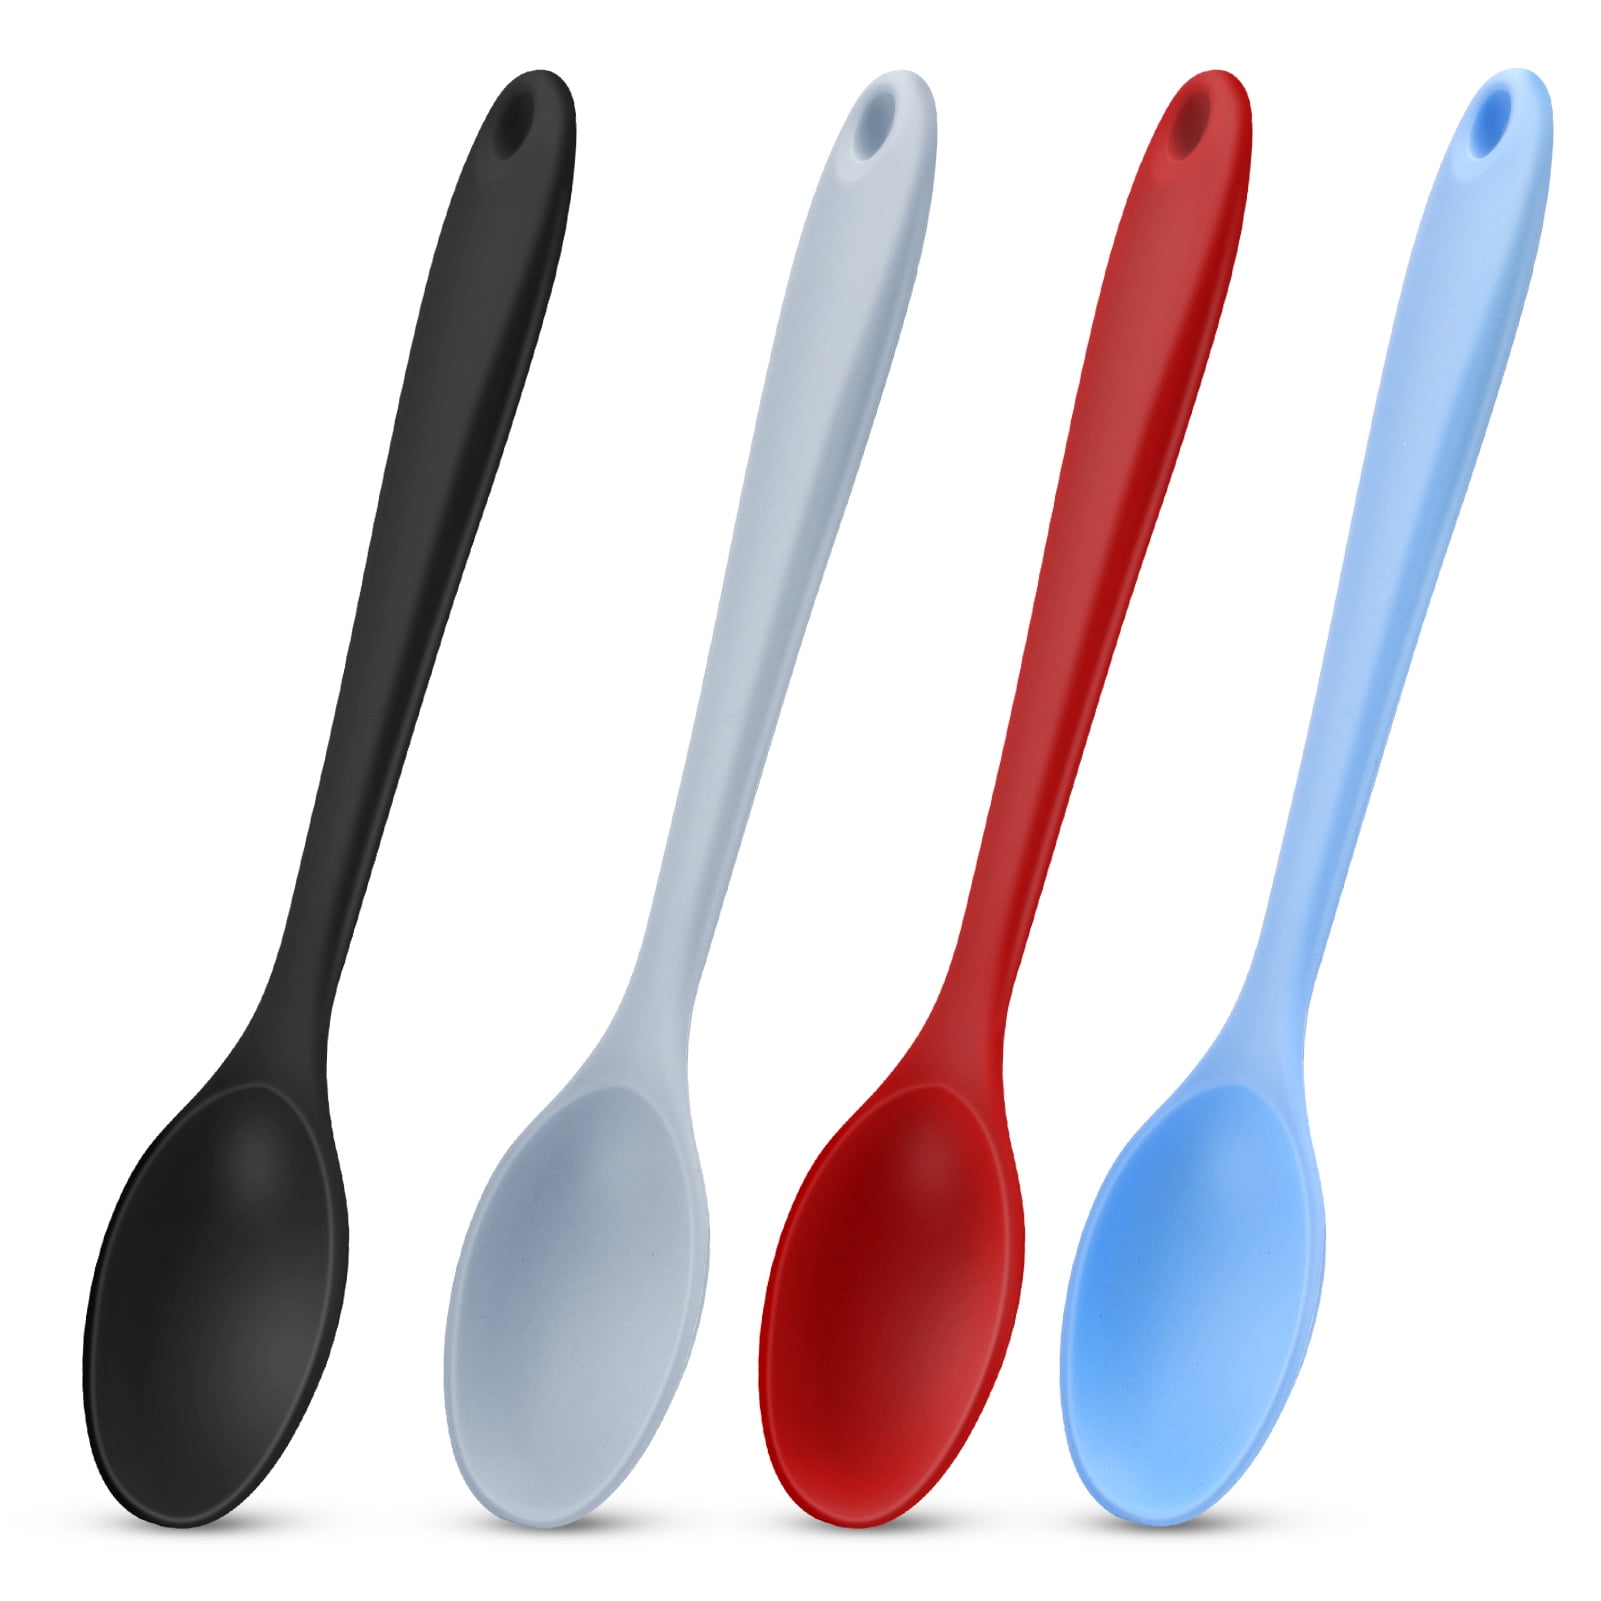 7-Piece Spice Measuring Spoons (Premium Steel) - Saint Germain Bakery